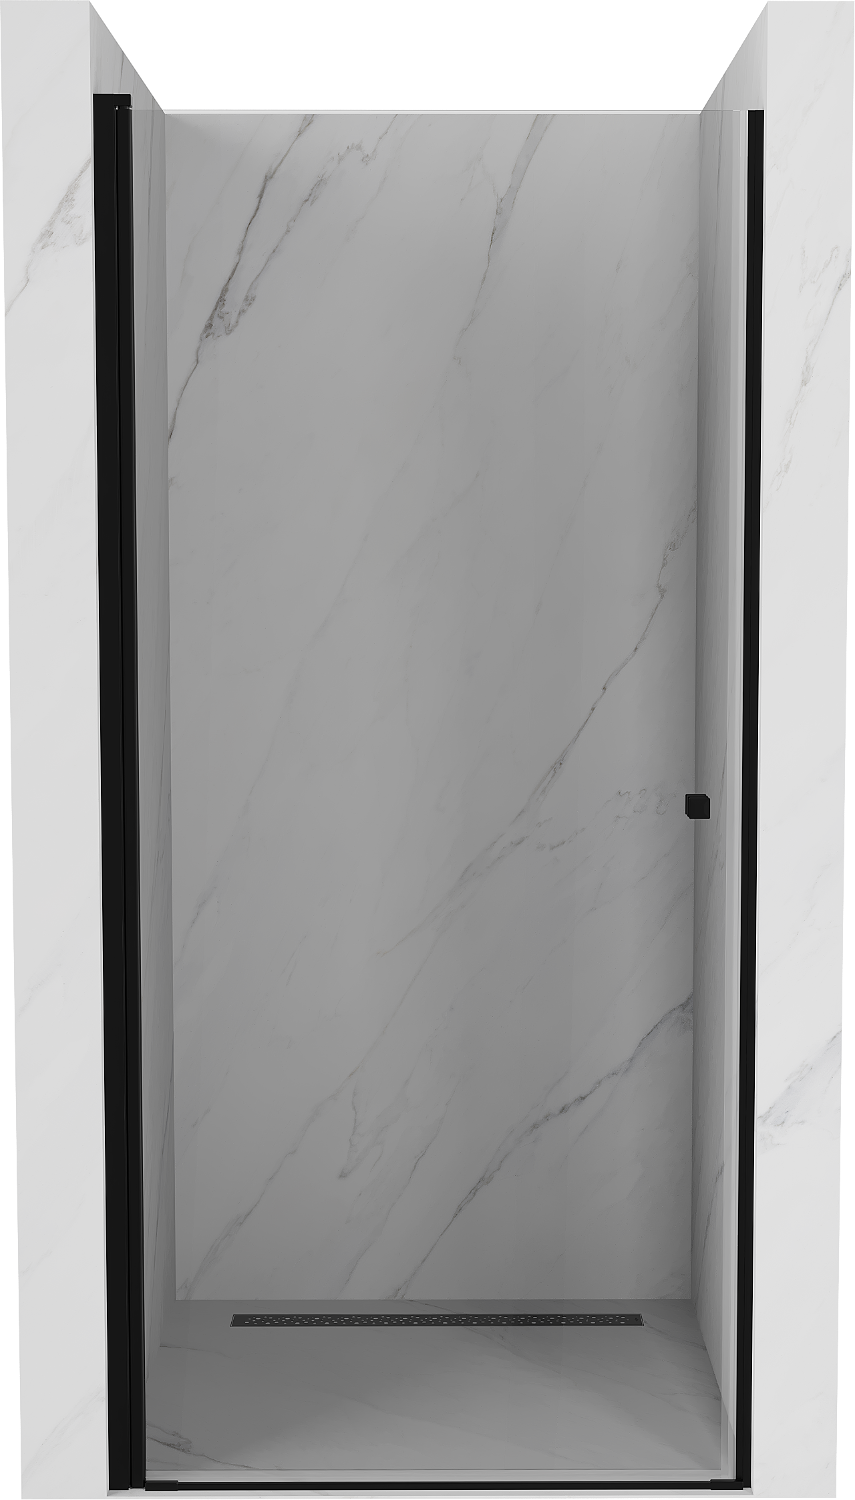 Mexen Pretoria drzwi prysznicowe uchylne 80 cm, transparent, czarne - 852-080-000-70-00